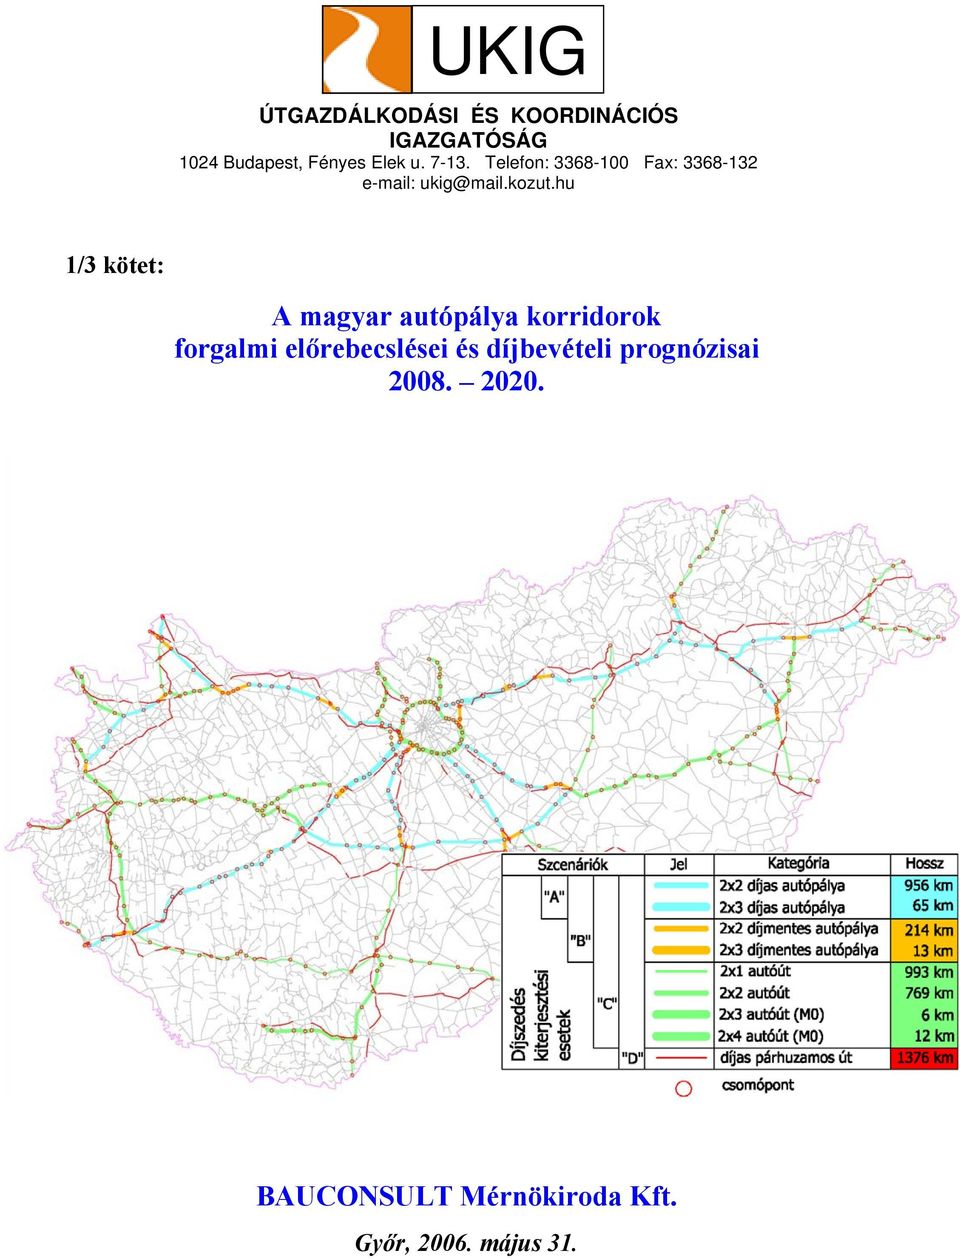 hu 1/3 kötet: A magyar autópálya korridorok forgalmi előrebecslései és